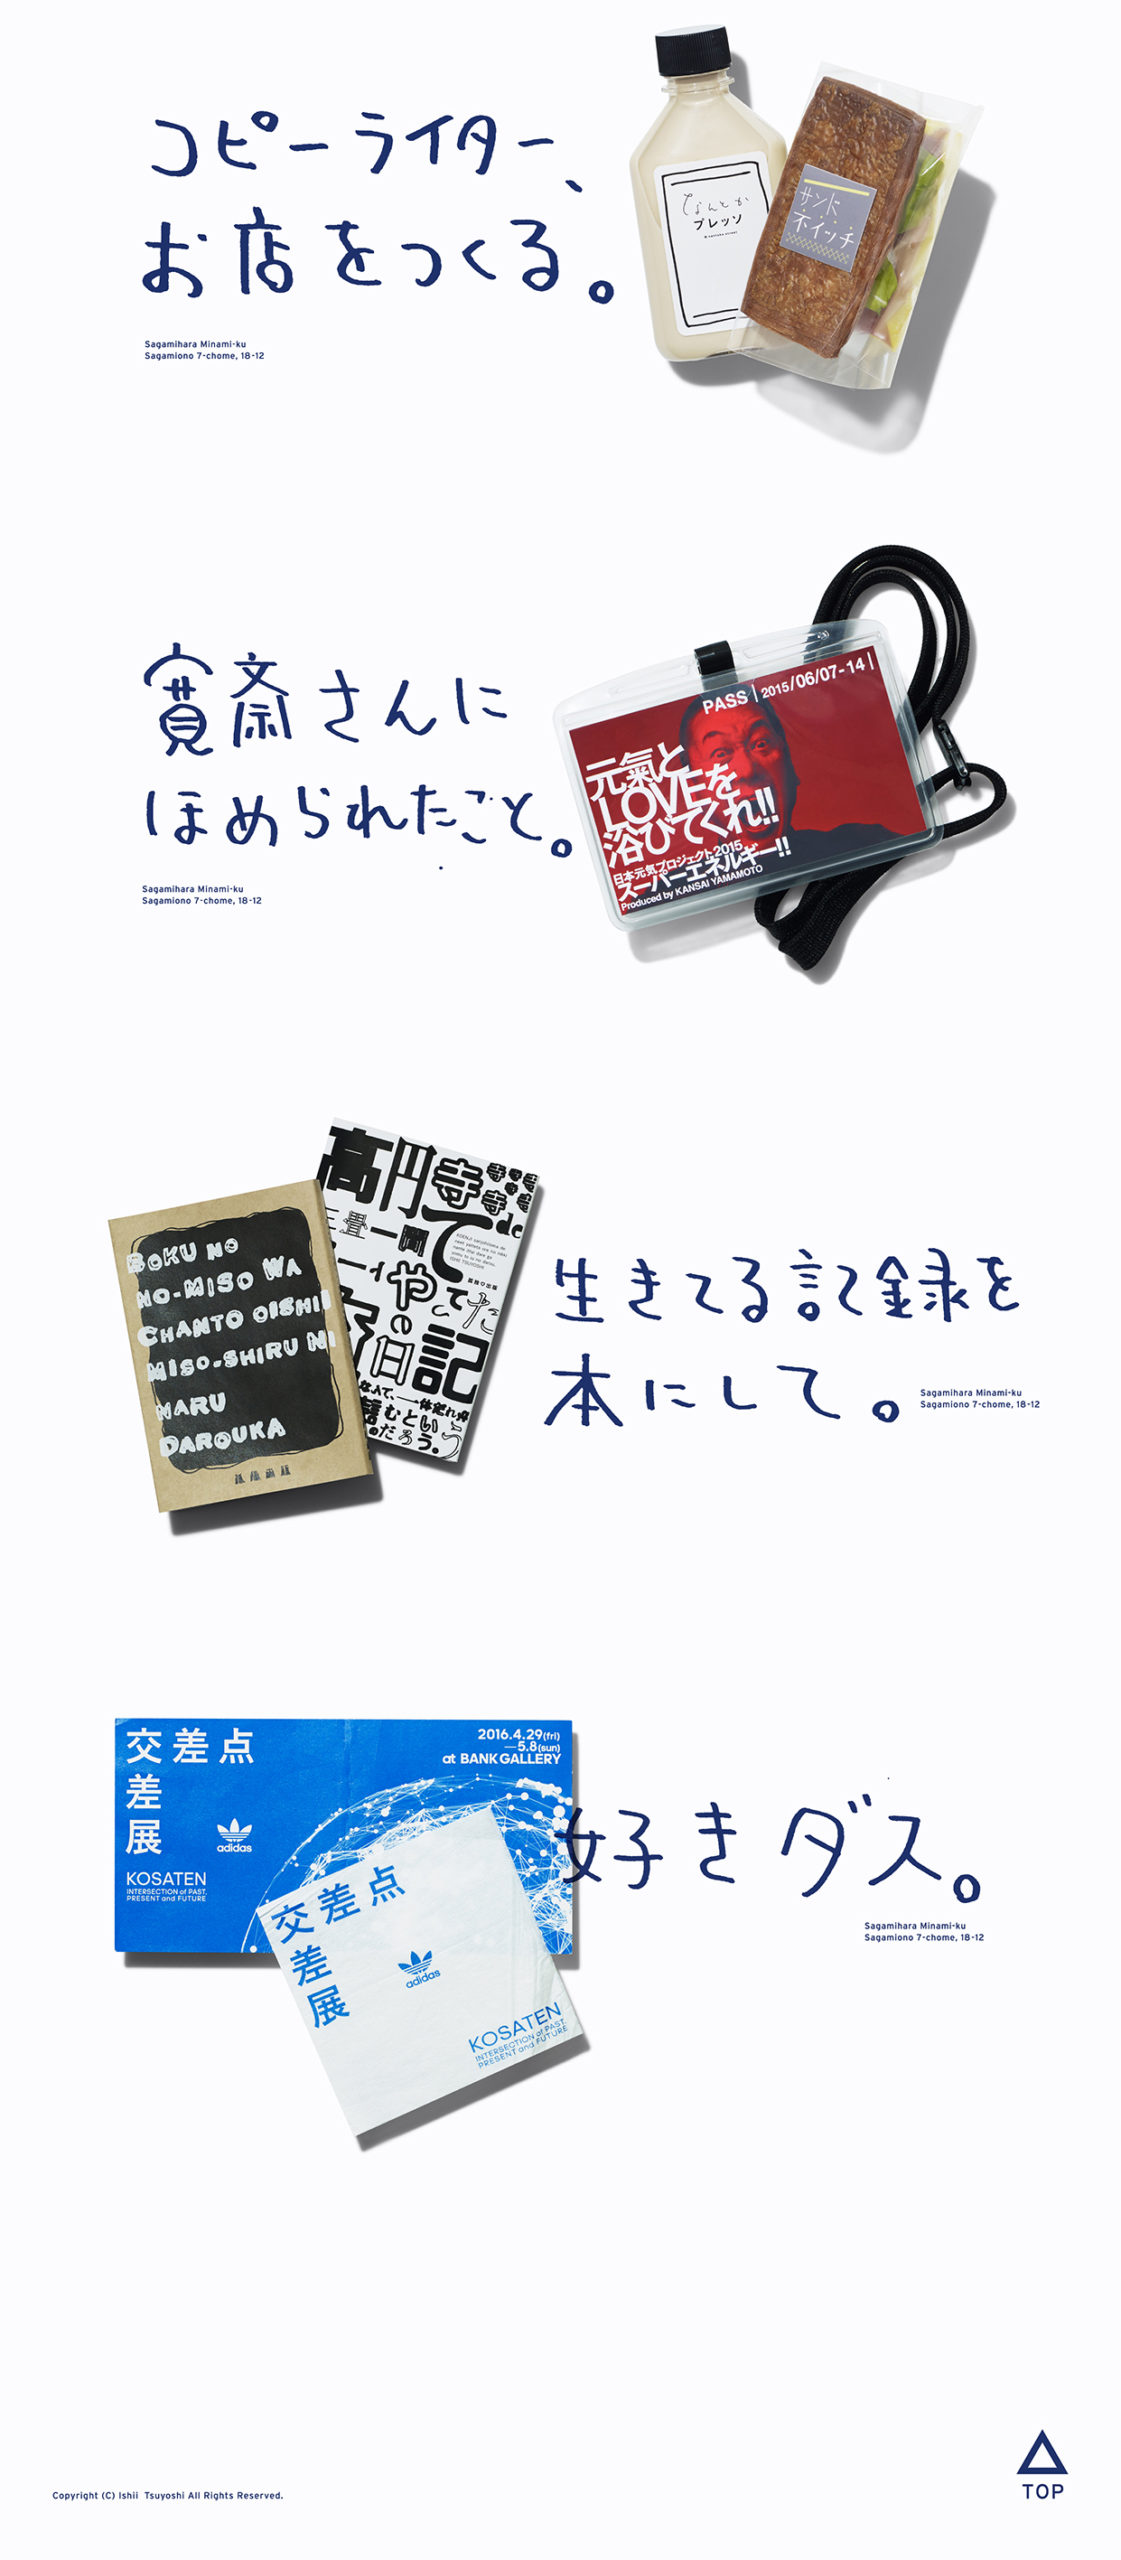 Copy Writer Ishii Tsuyoshi web page